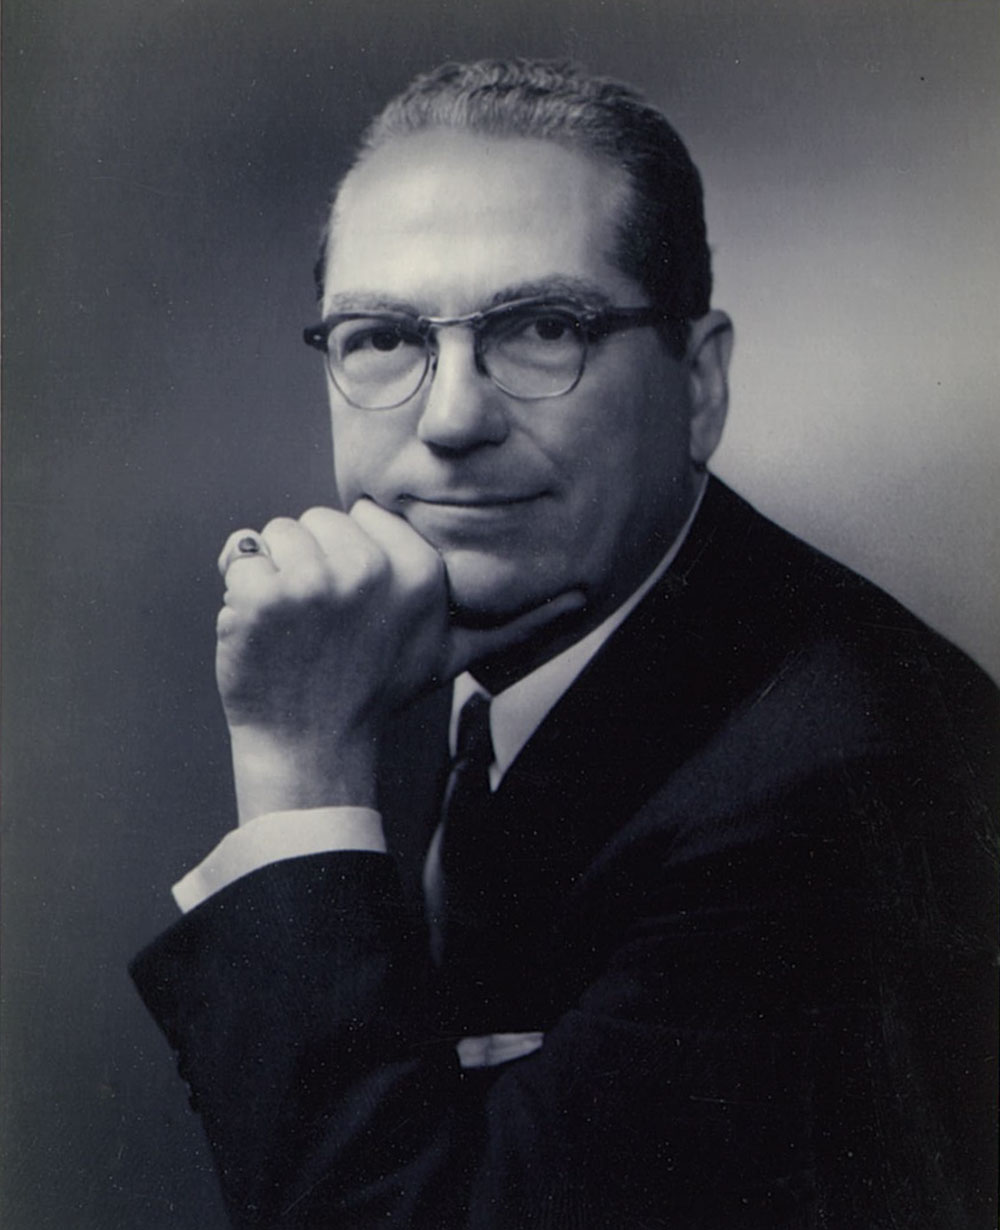 W. Howard Chase, PRSA President of 1956